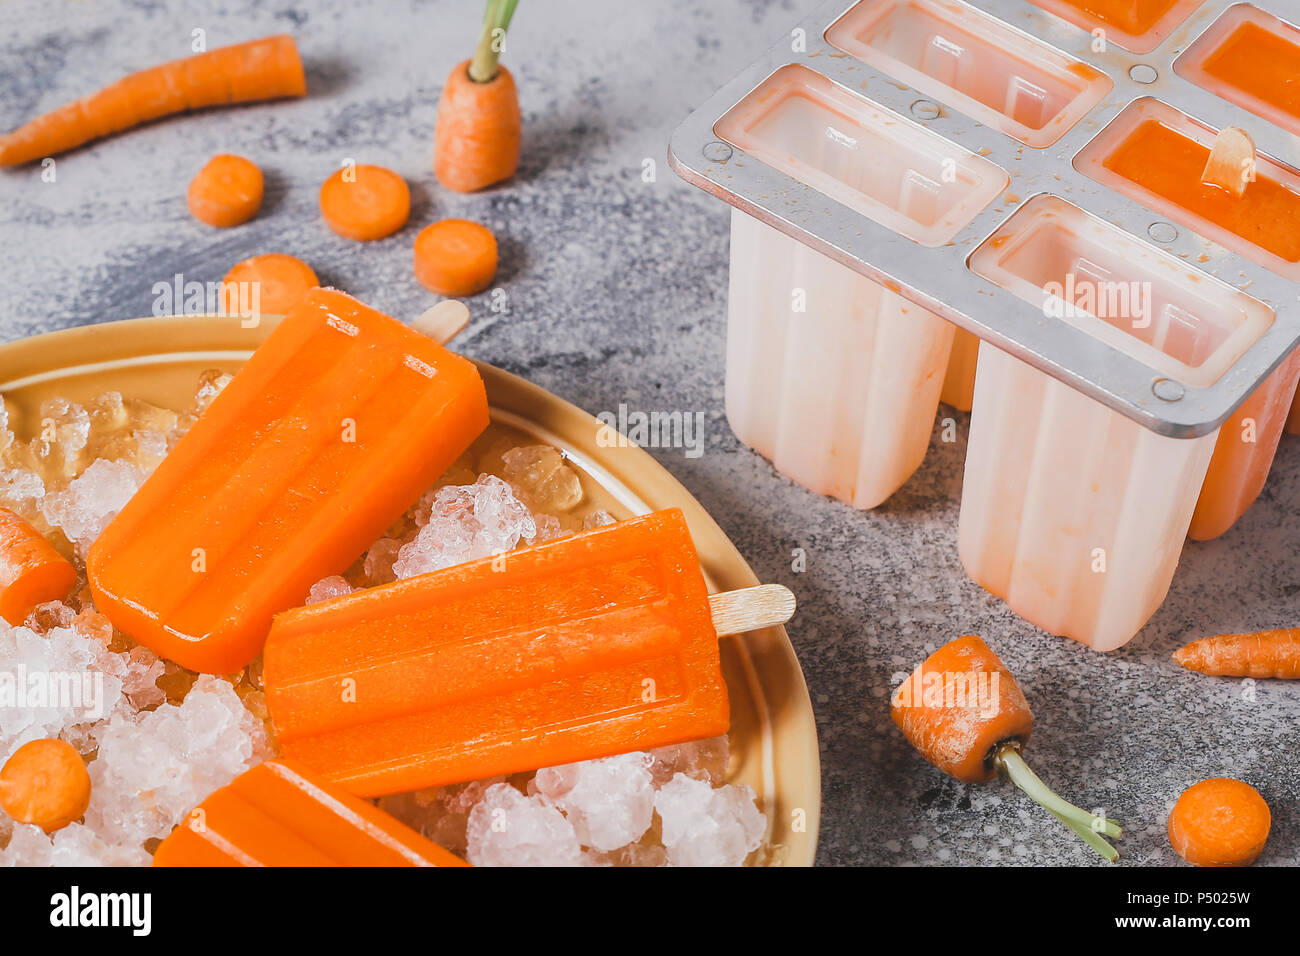 Zanahoria chupachupas hielo Foto de stock